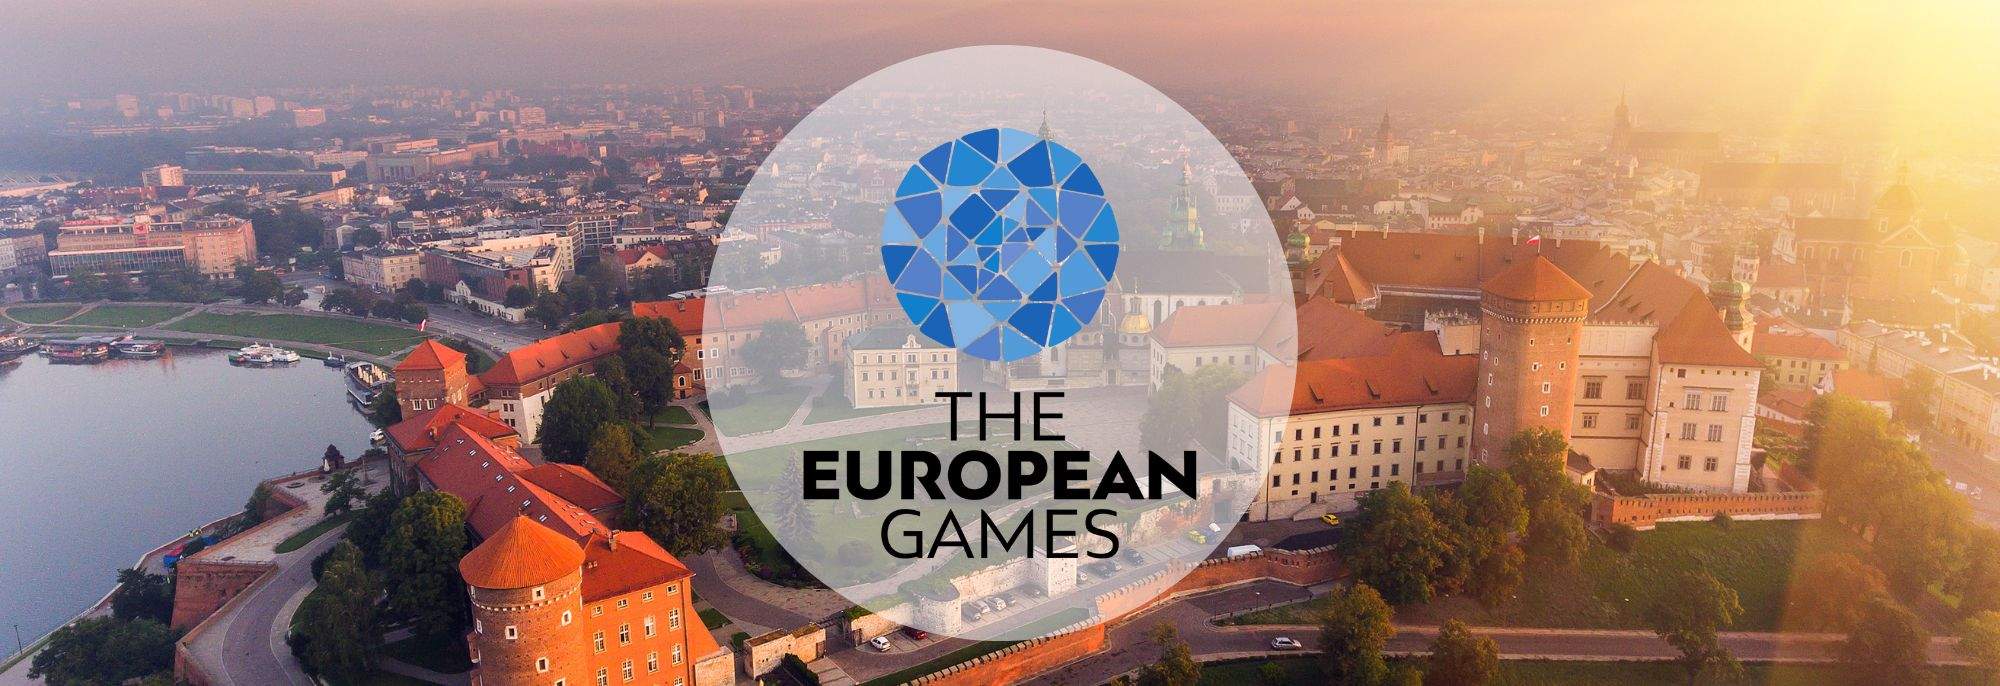 Découvrez Cracovie et Małopolska lors des Jeux européens 2023 : Émotions, Attractions et Détente Garanties !